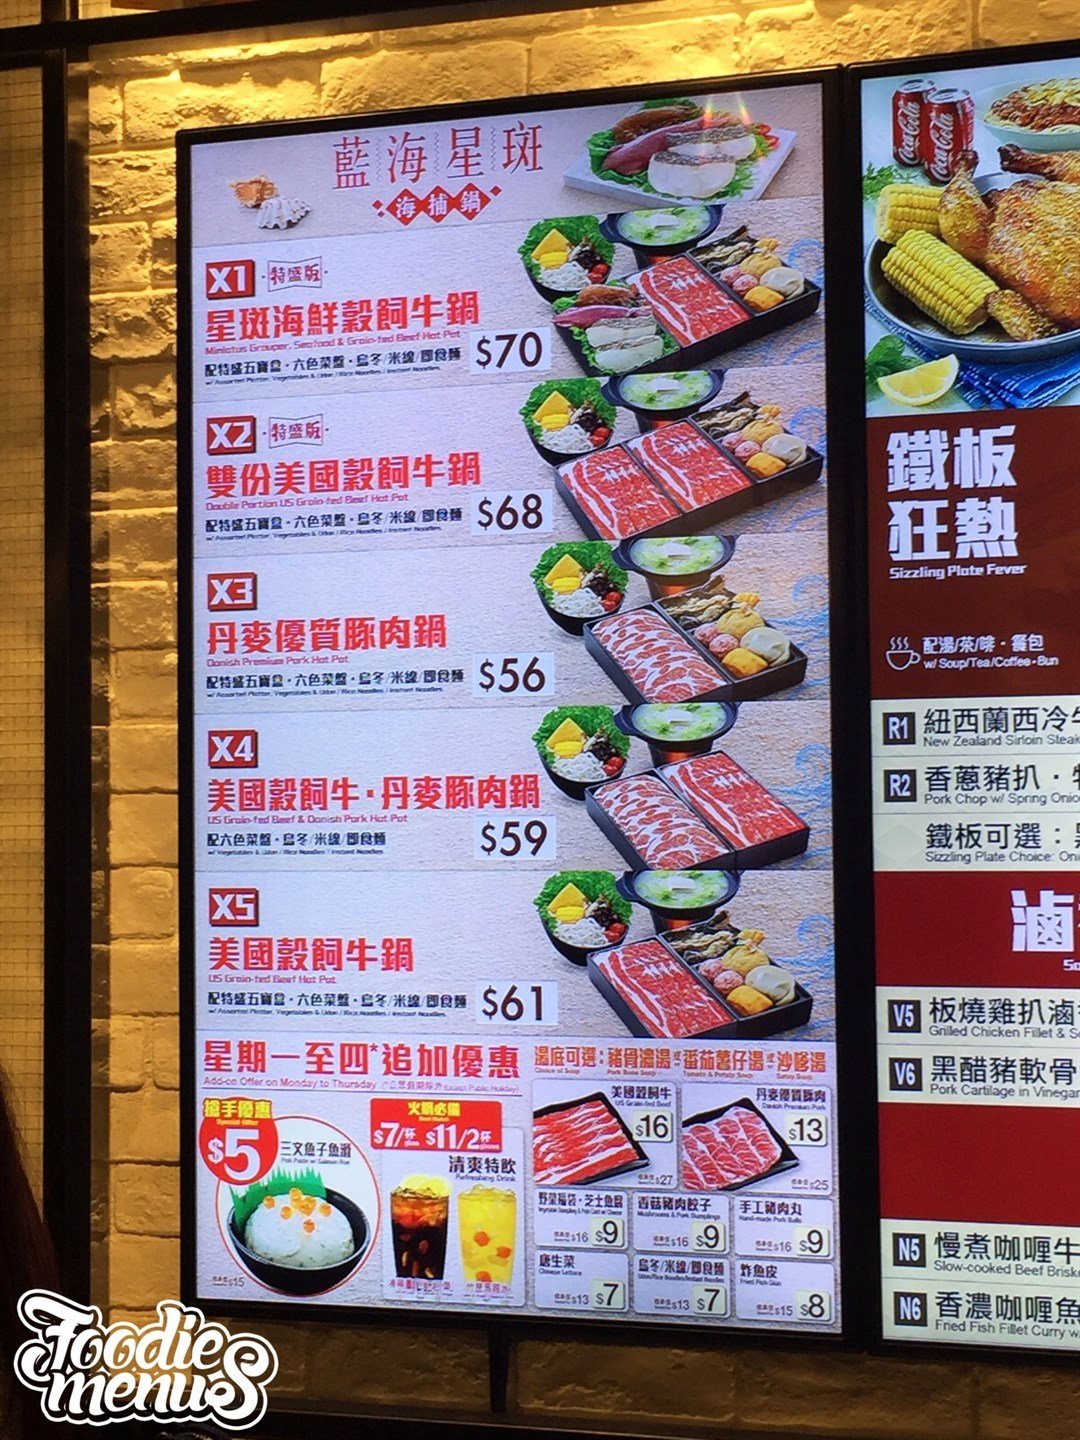 大家乐的餐牌 – 香港红磡的港式无肉餐单快餐店 